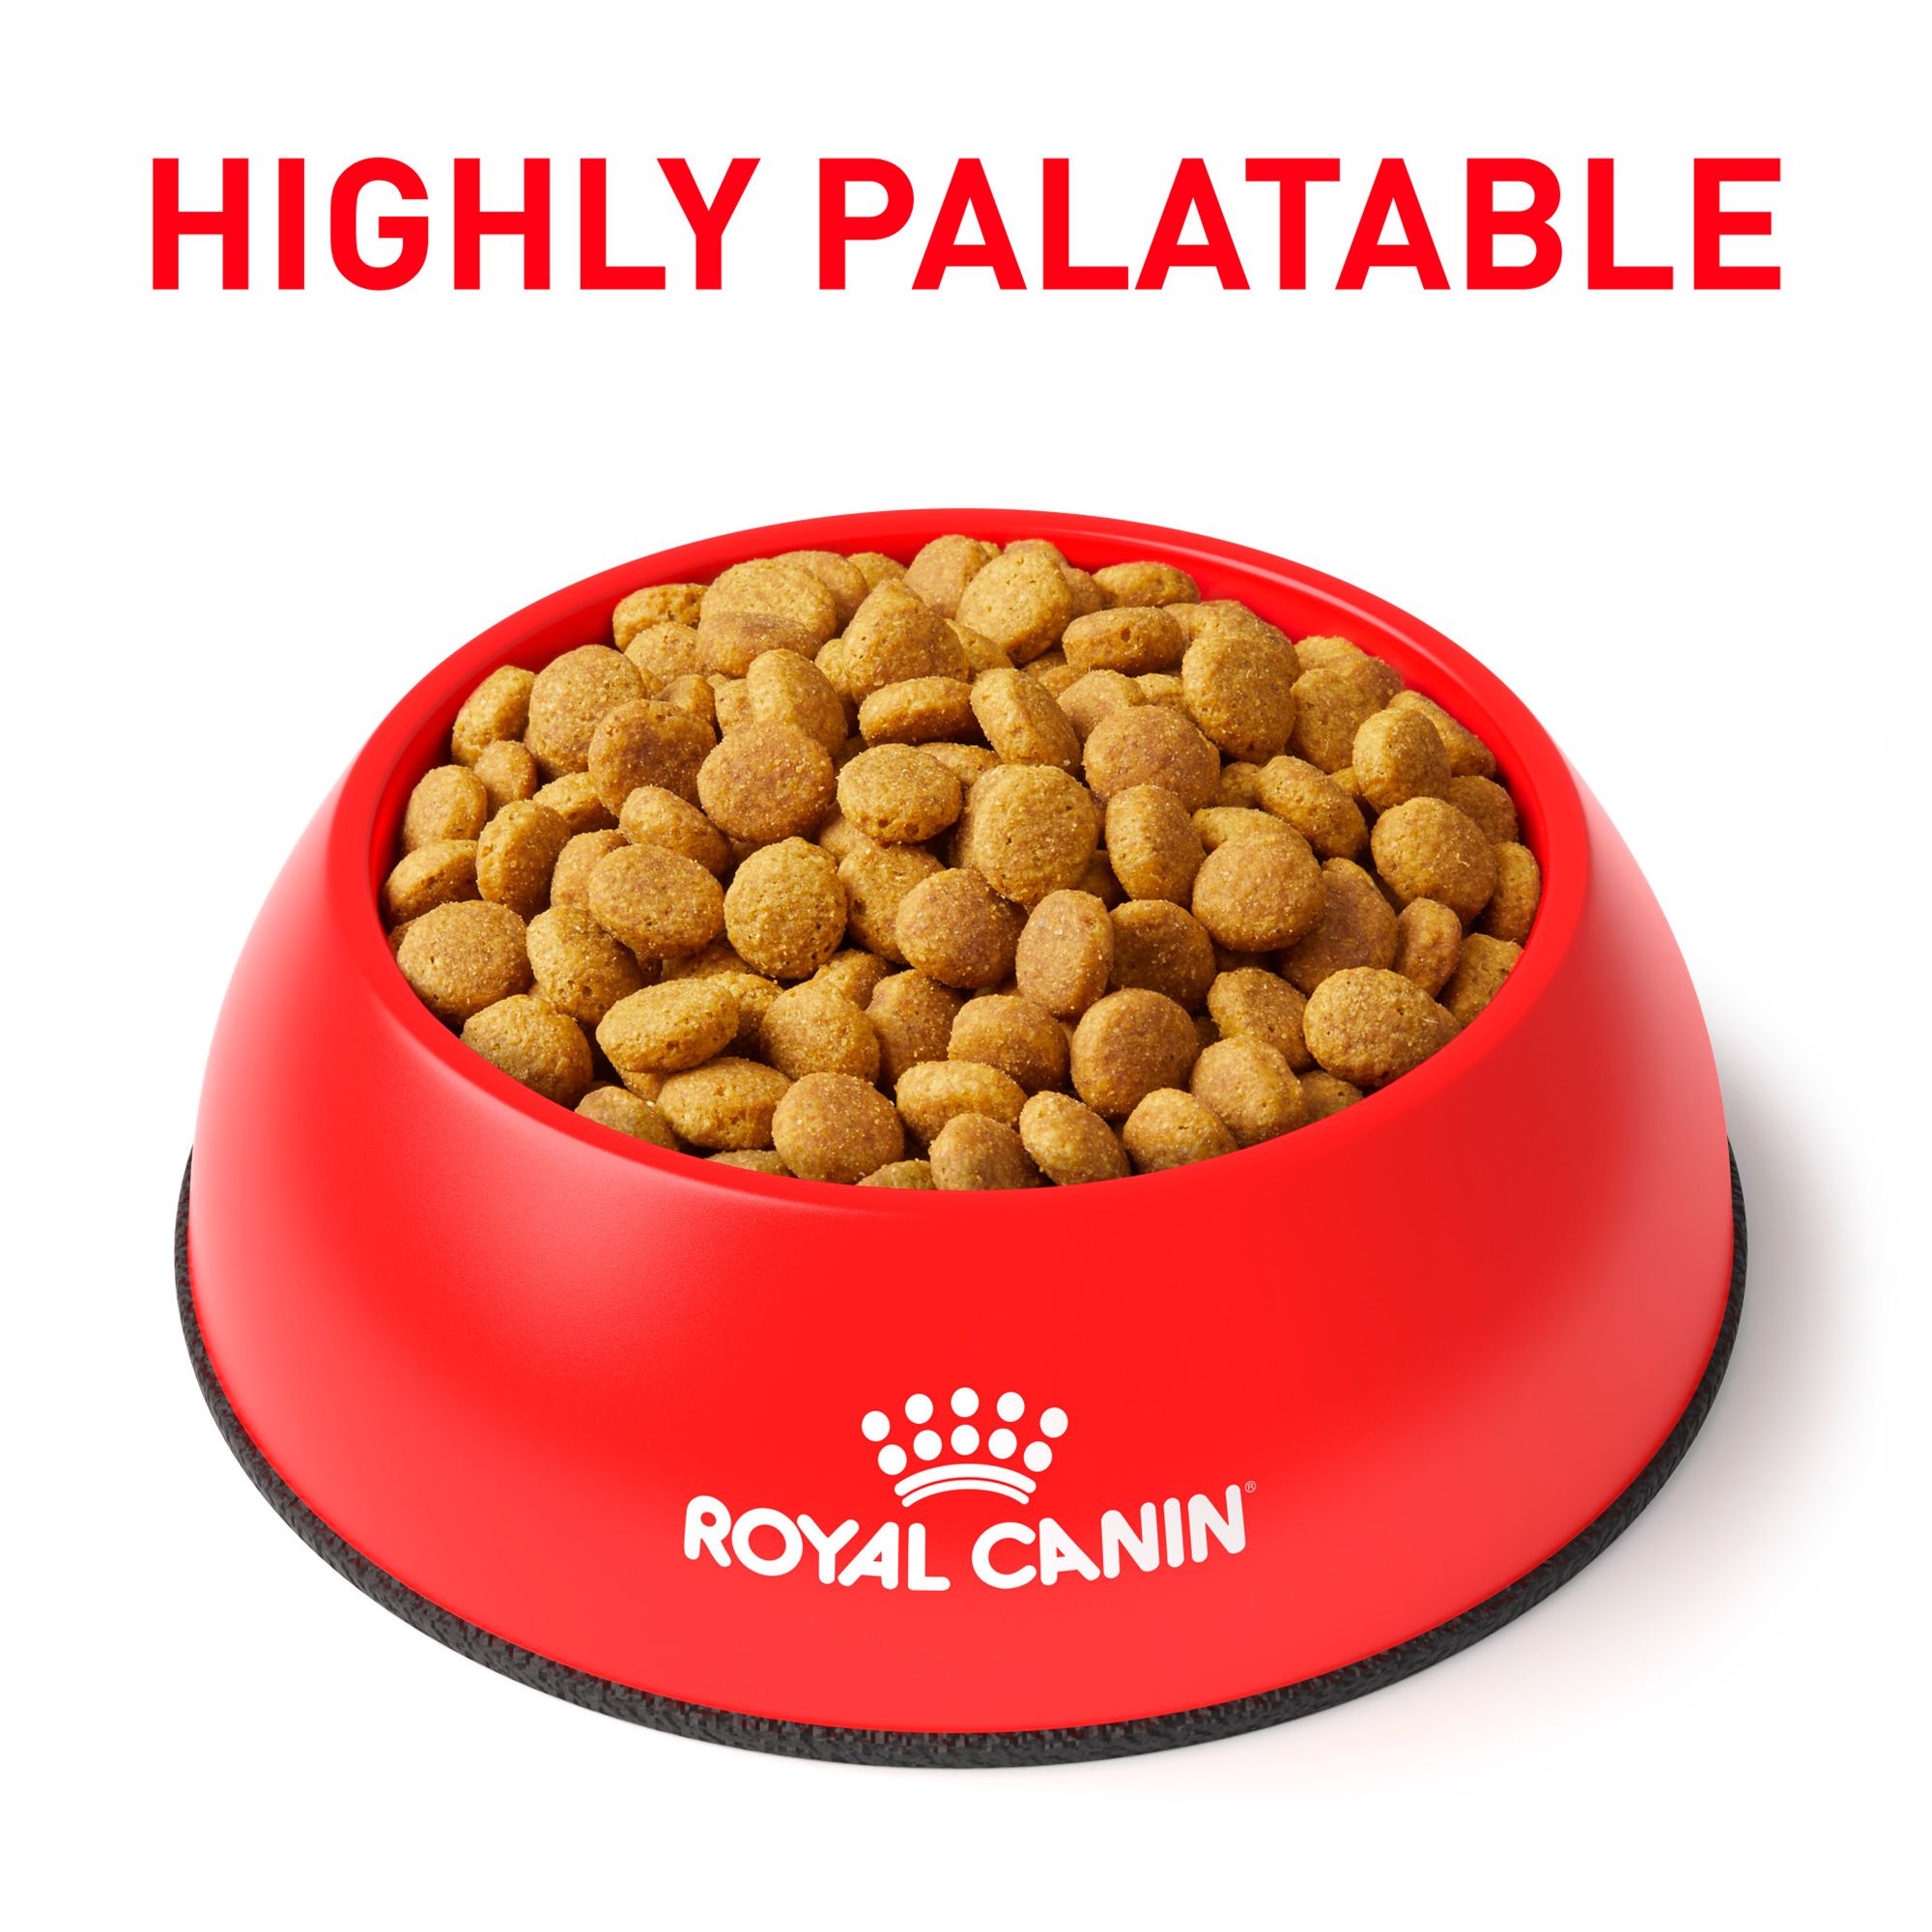 royal canin ultamino cat food